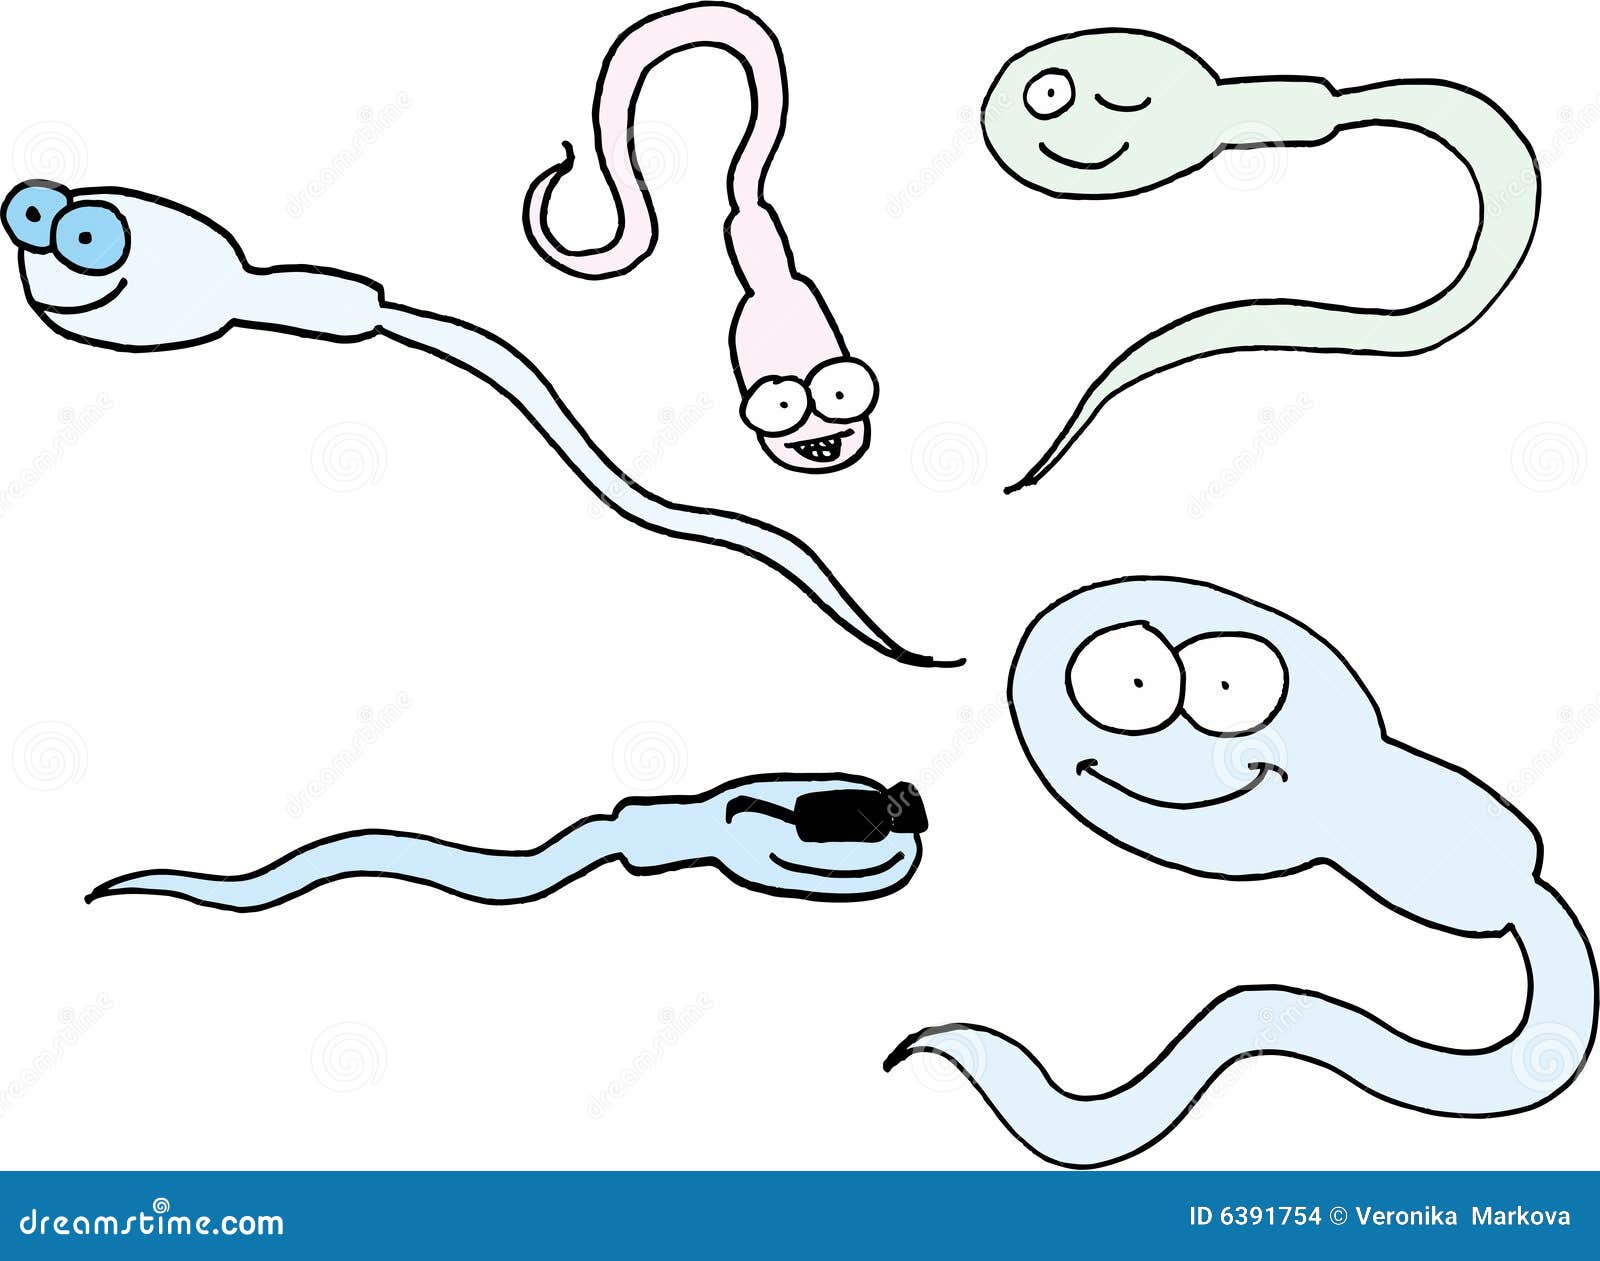 сперма картинка смешные фото 85